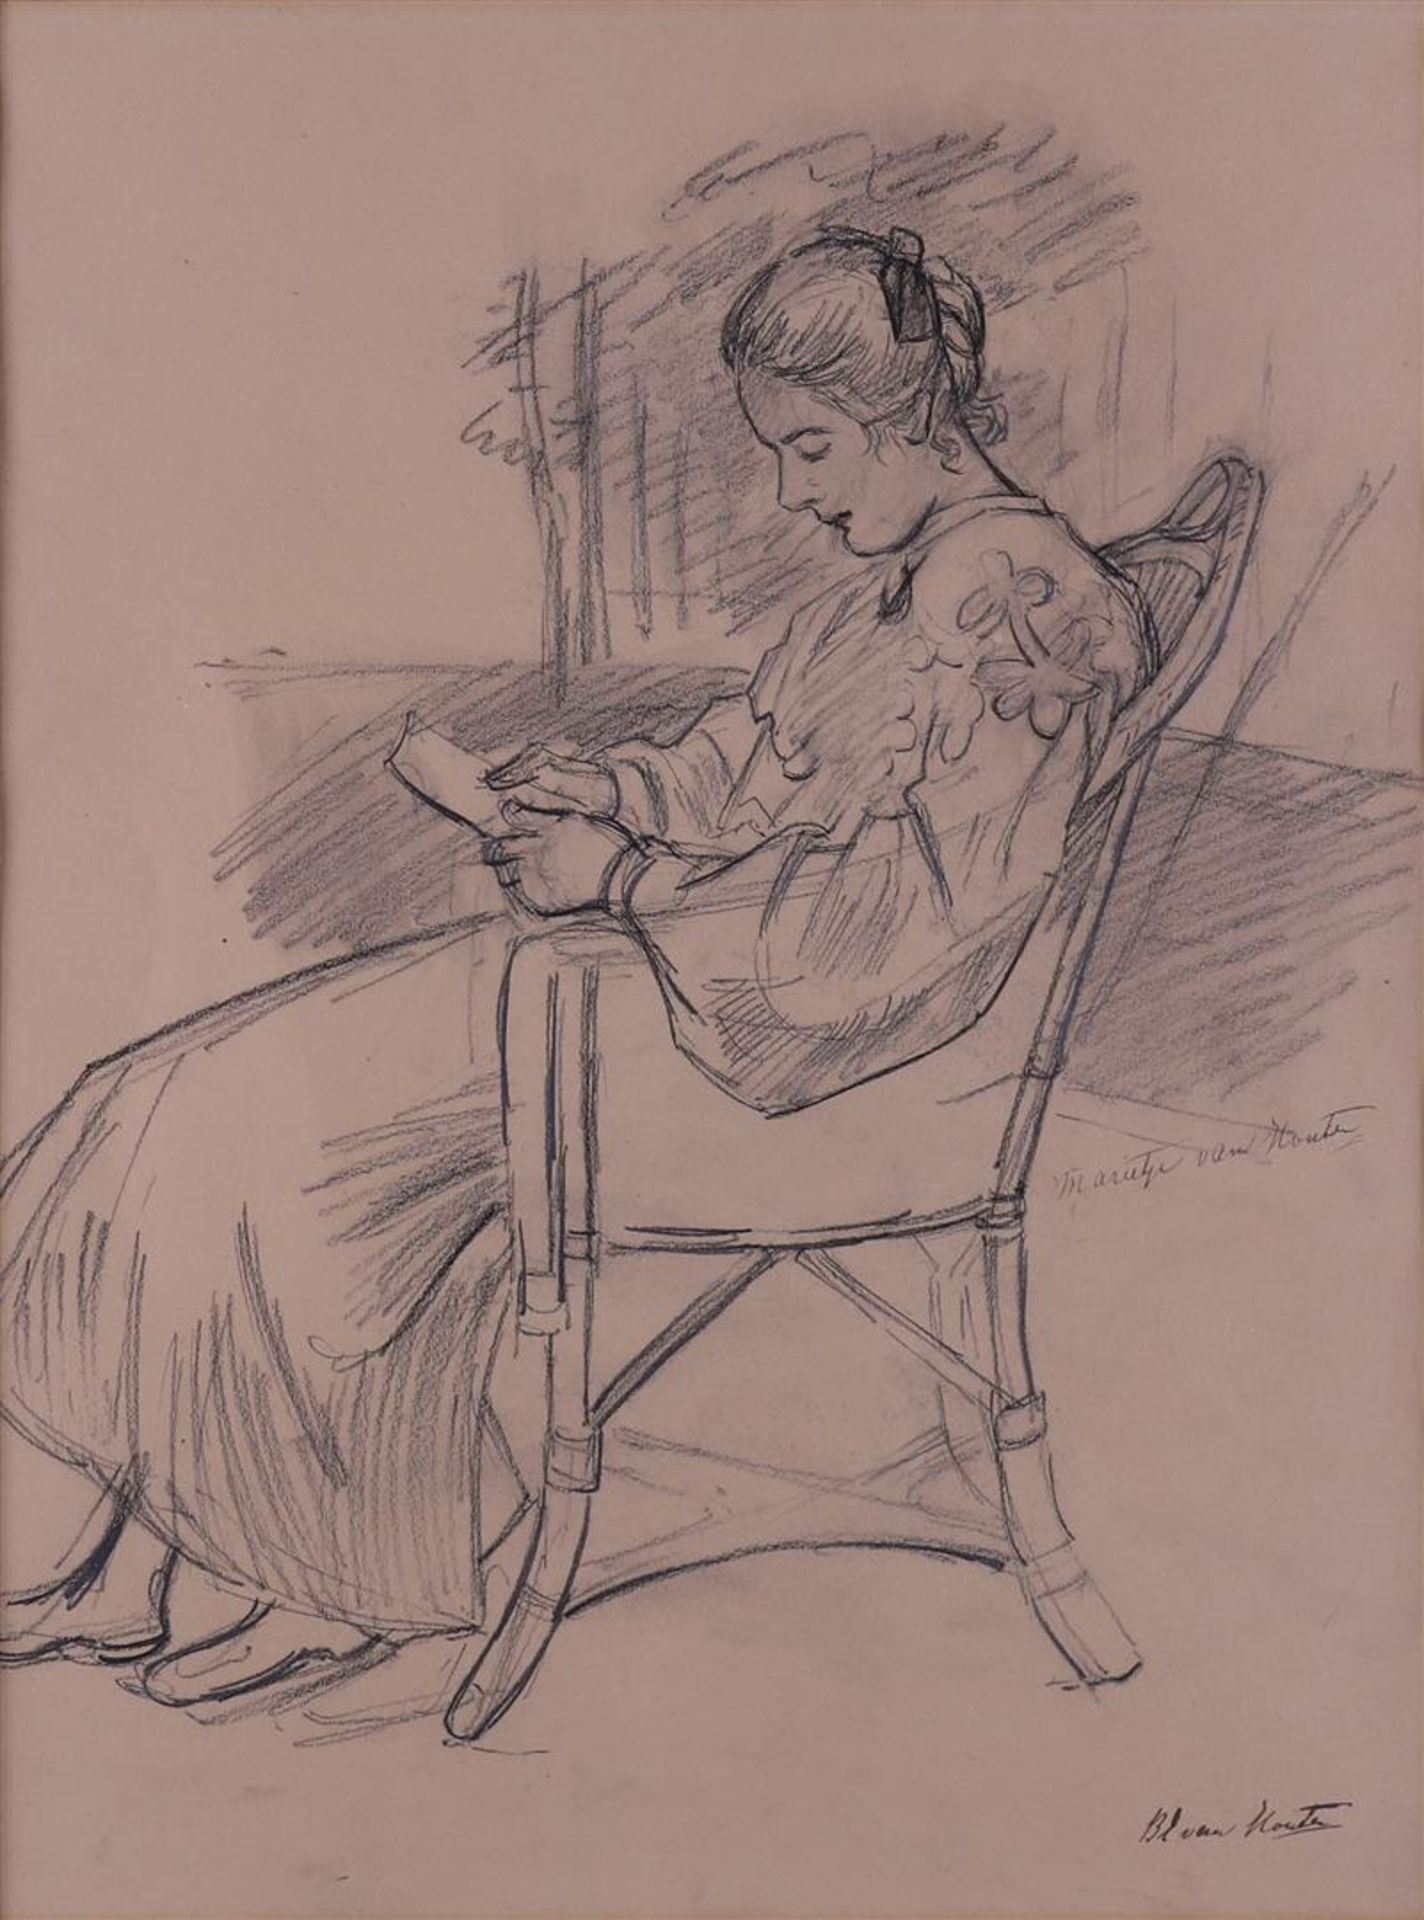 Houten van, Barbara Elisabeth (1862 - 1950) 'Marieke van Houten' - Image 2 of 3